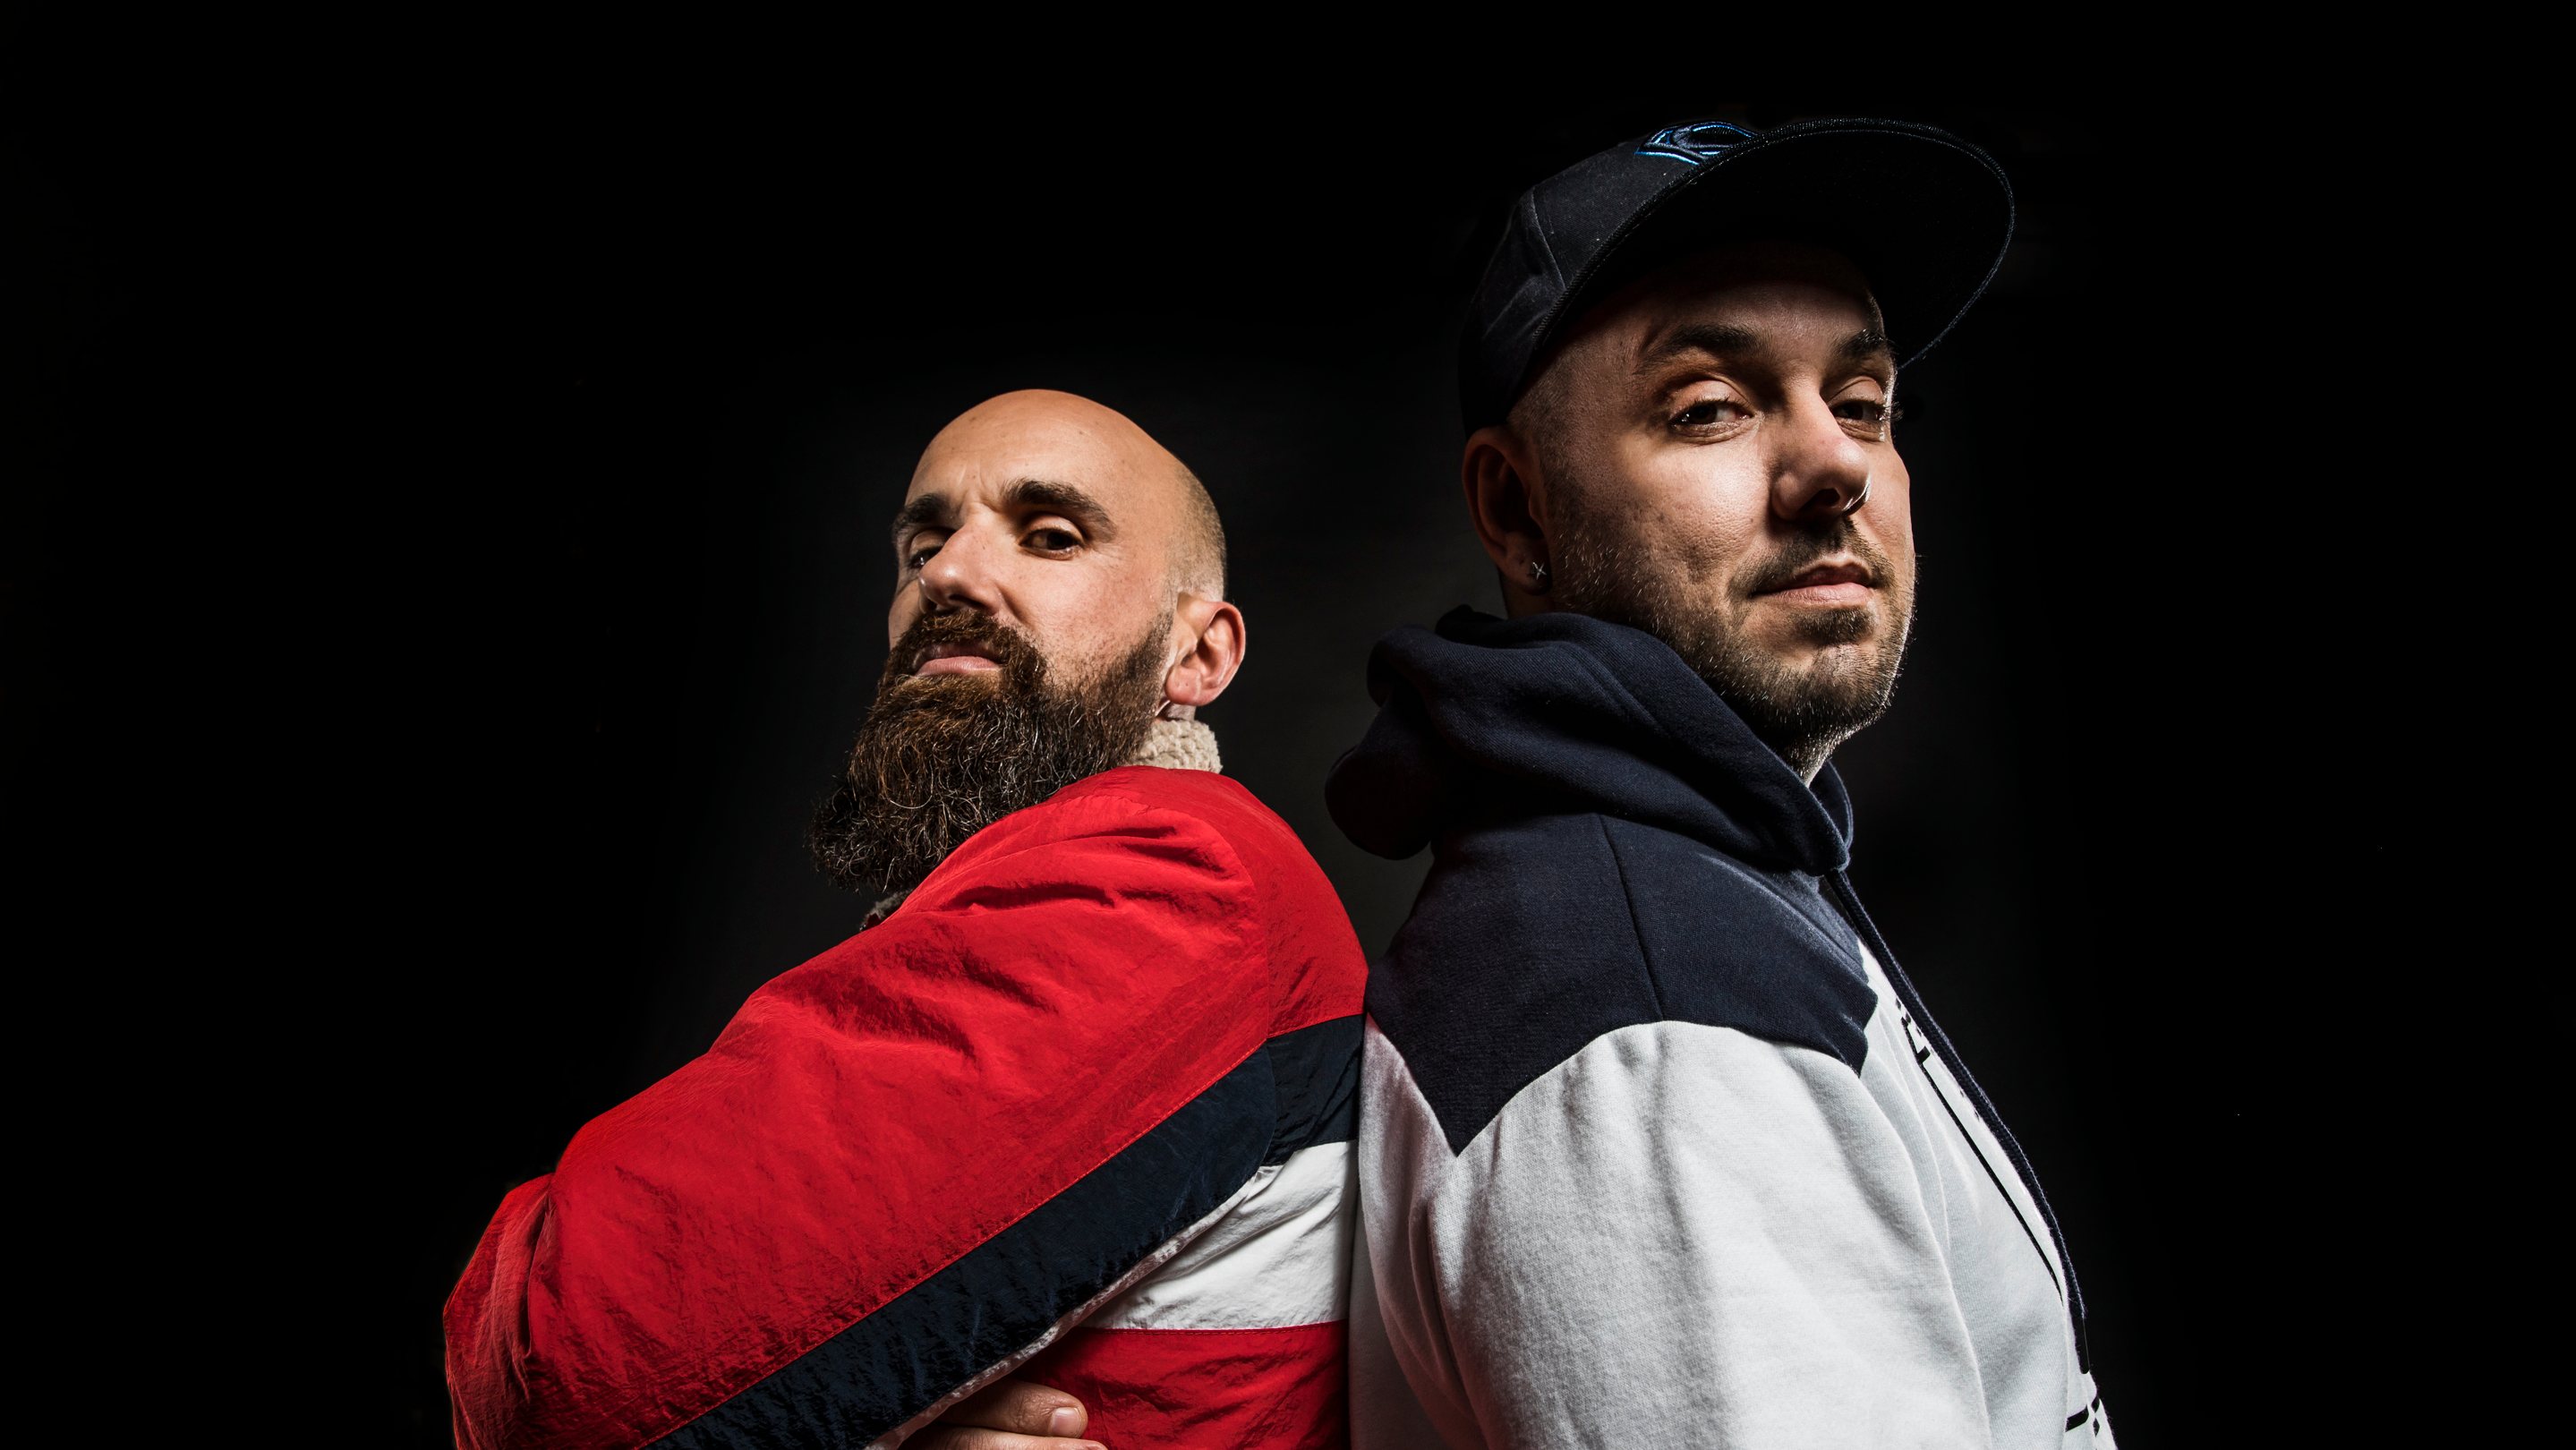 A dupla portuguesa de hip-hop Mundo Segundo & Sam the Kid vai atuar a 19 de novembro no Coliseu dos Recreios, no âmbito do festival Super Bock em Stock